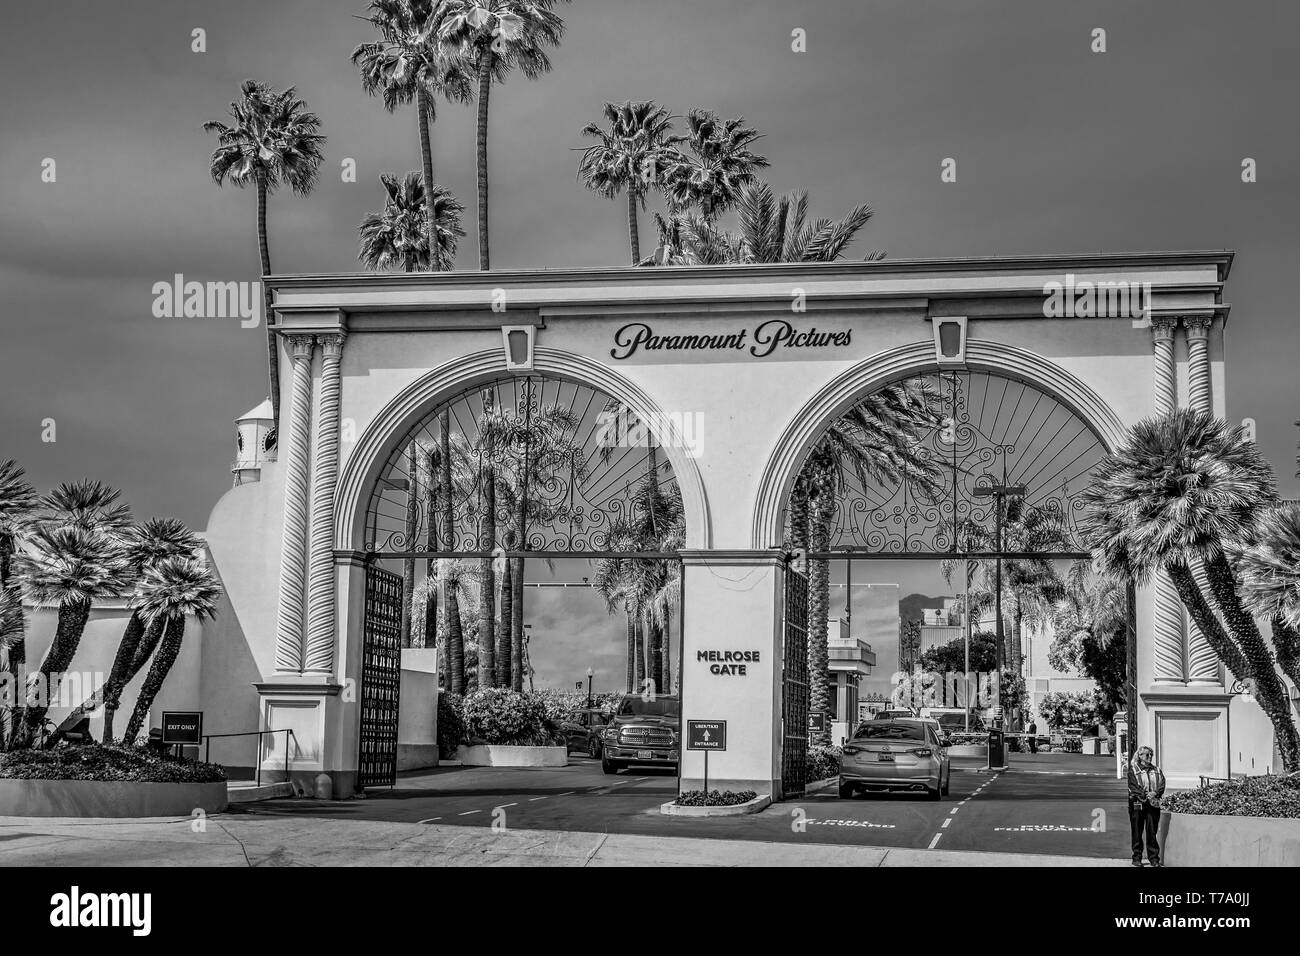 Melrose Tor von Paramount Pictures Film Studios in Los Angeles, Kalifornien, USA - 18. MÄRZ 2019 Stockfoto